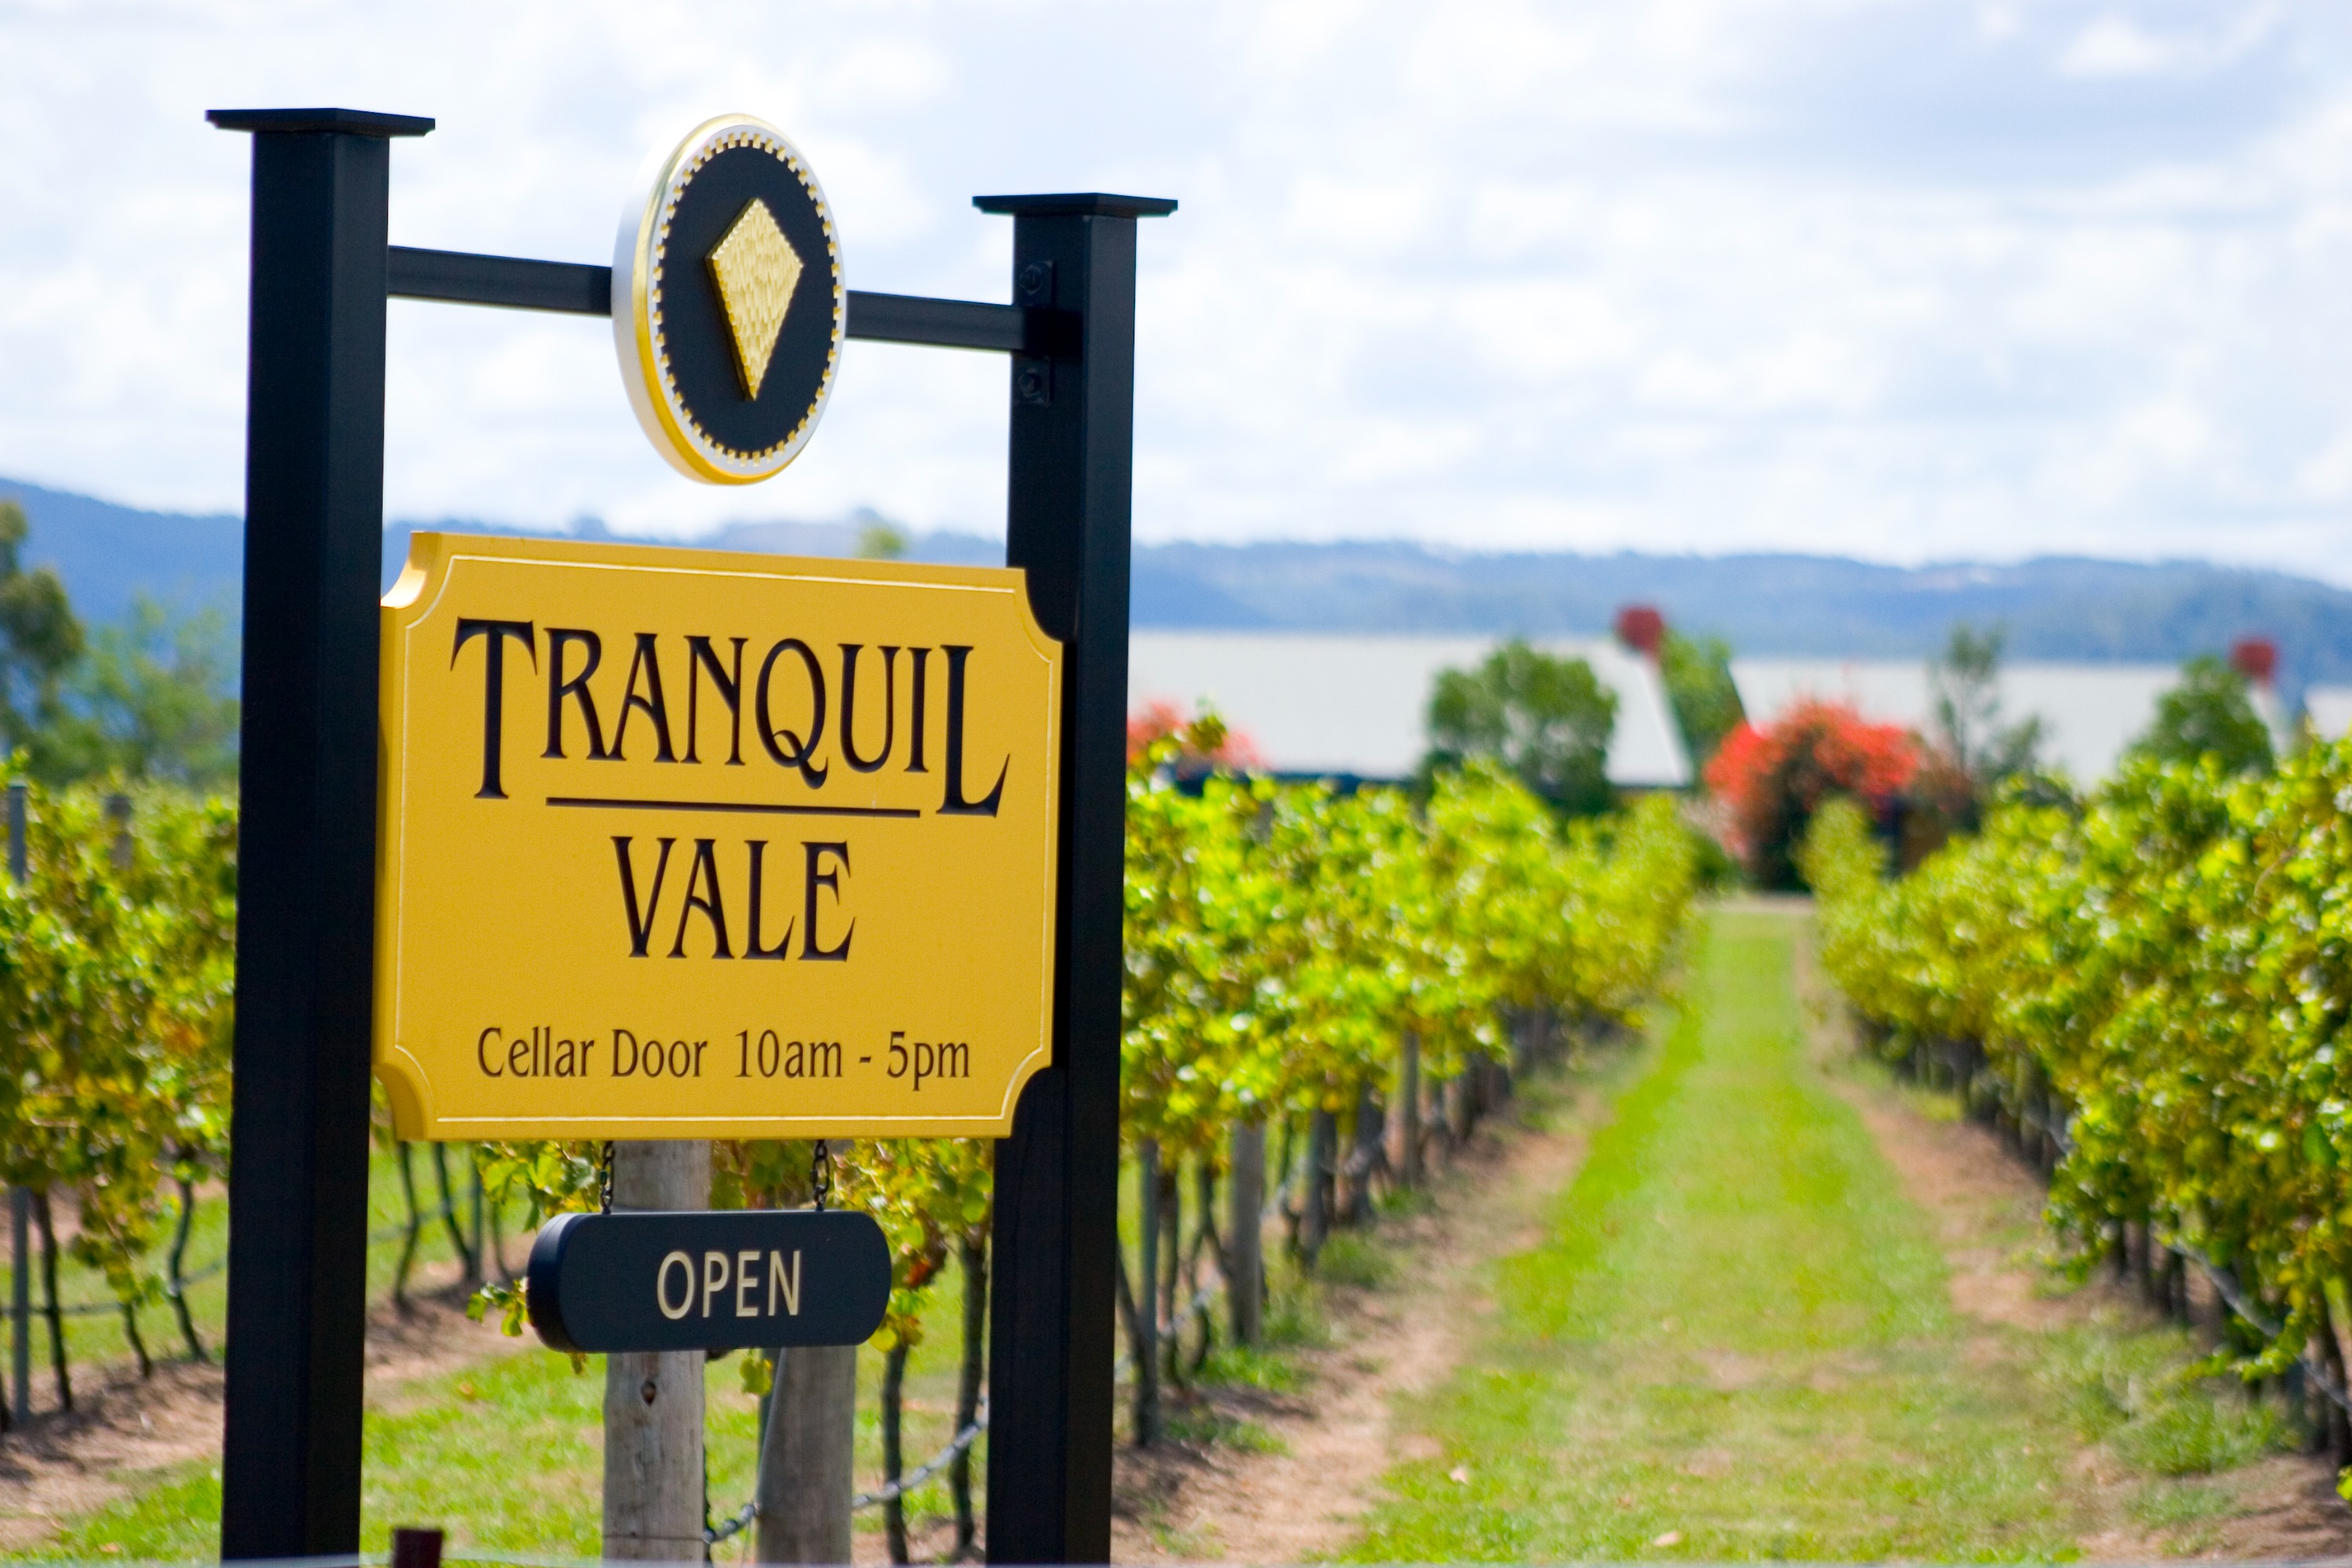 獵人谷 Tranquil Vale Vineyard 葡萄園酒莊品酒之旅